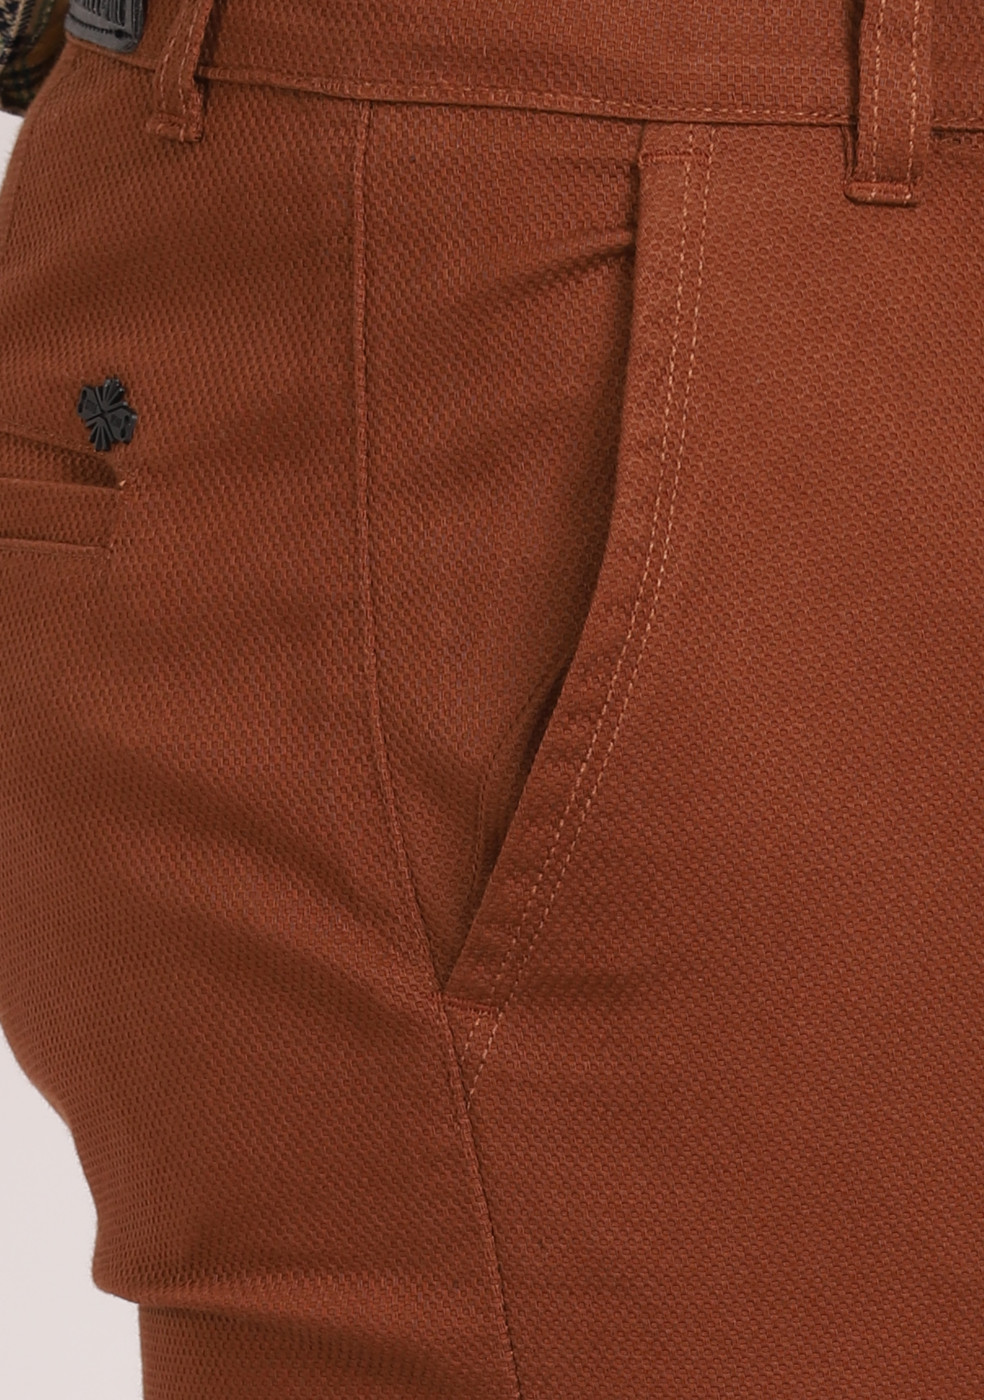 ASHTOM Cotton Trouser Regular Fit For Men